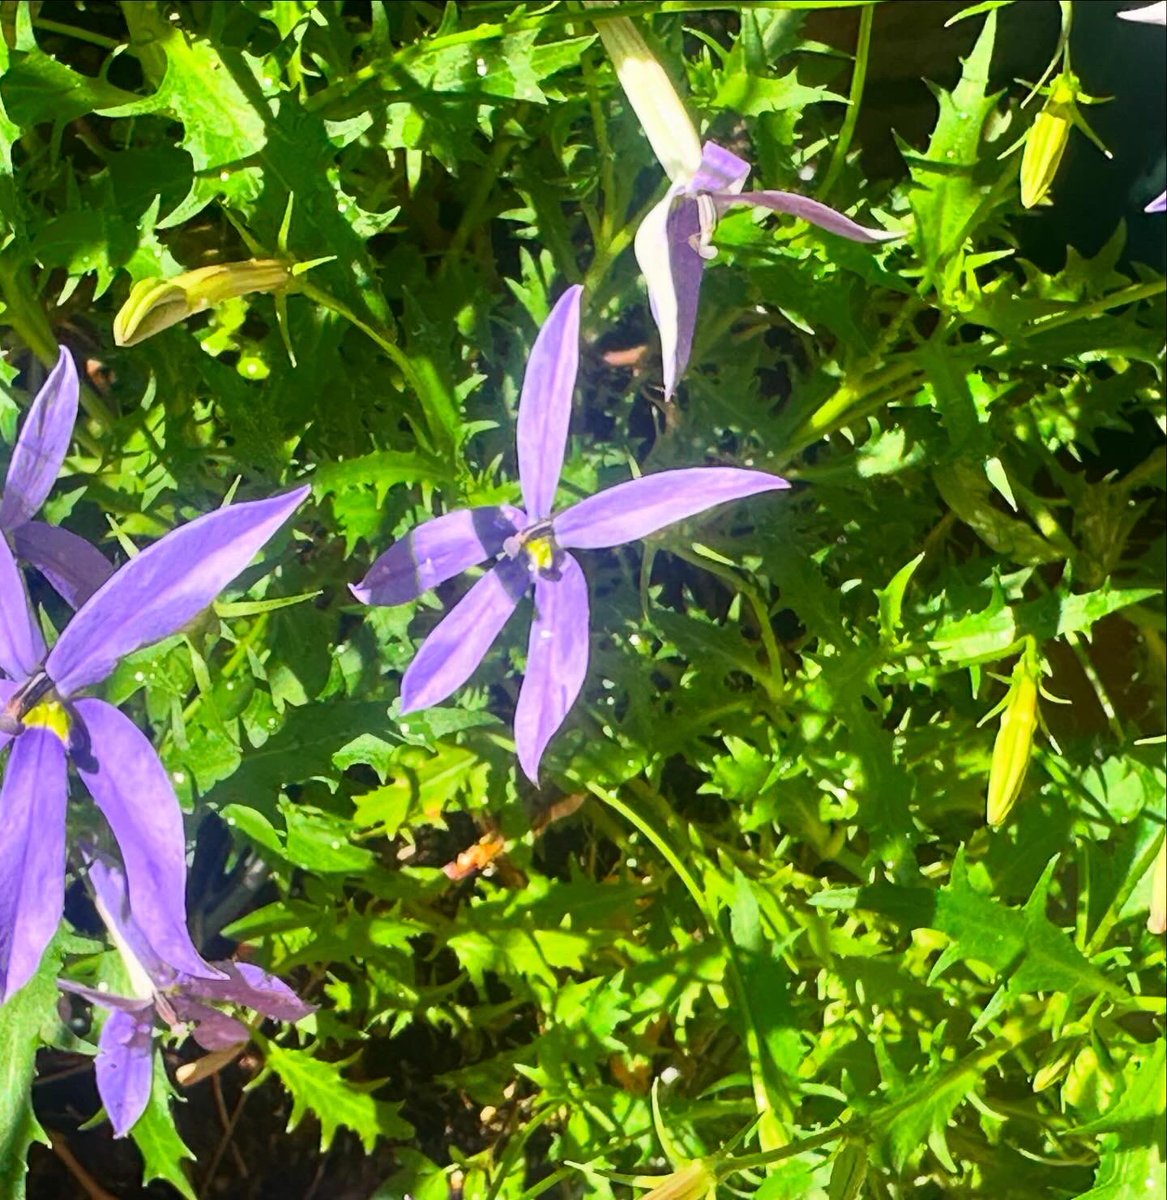 紫の星みたいなイソトマは昨年植え付け屋外で冬越しをした奇跡の子。
日本では一年草として扱われてるけど屋内だったら冬越しできるから多年草とも言われてるらしい。